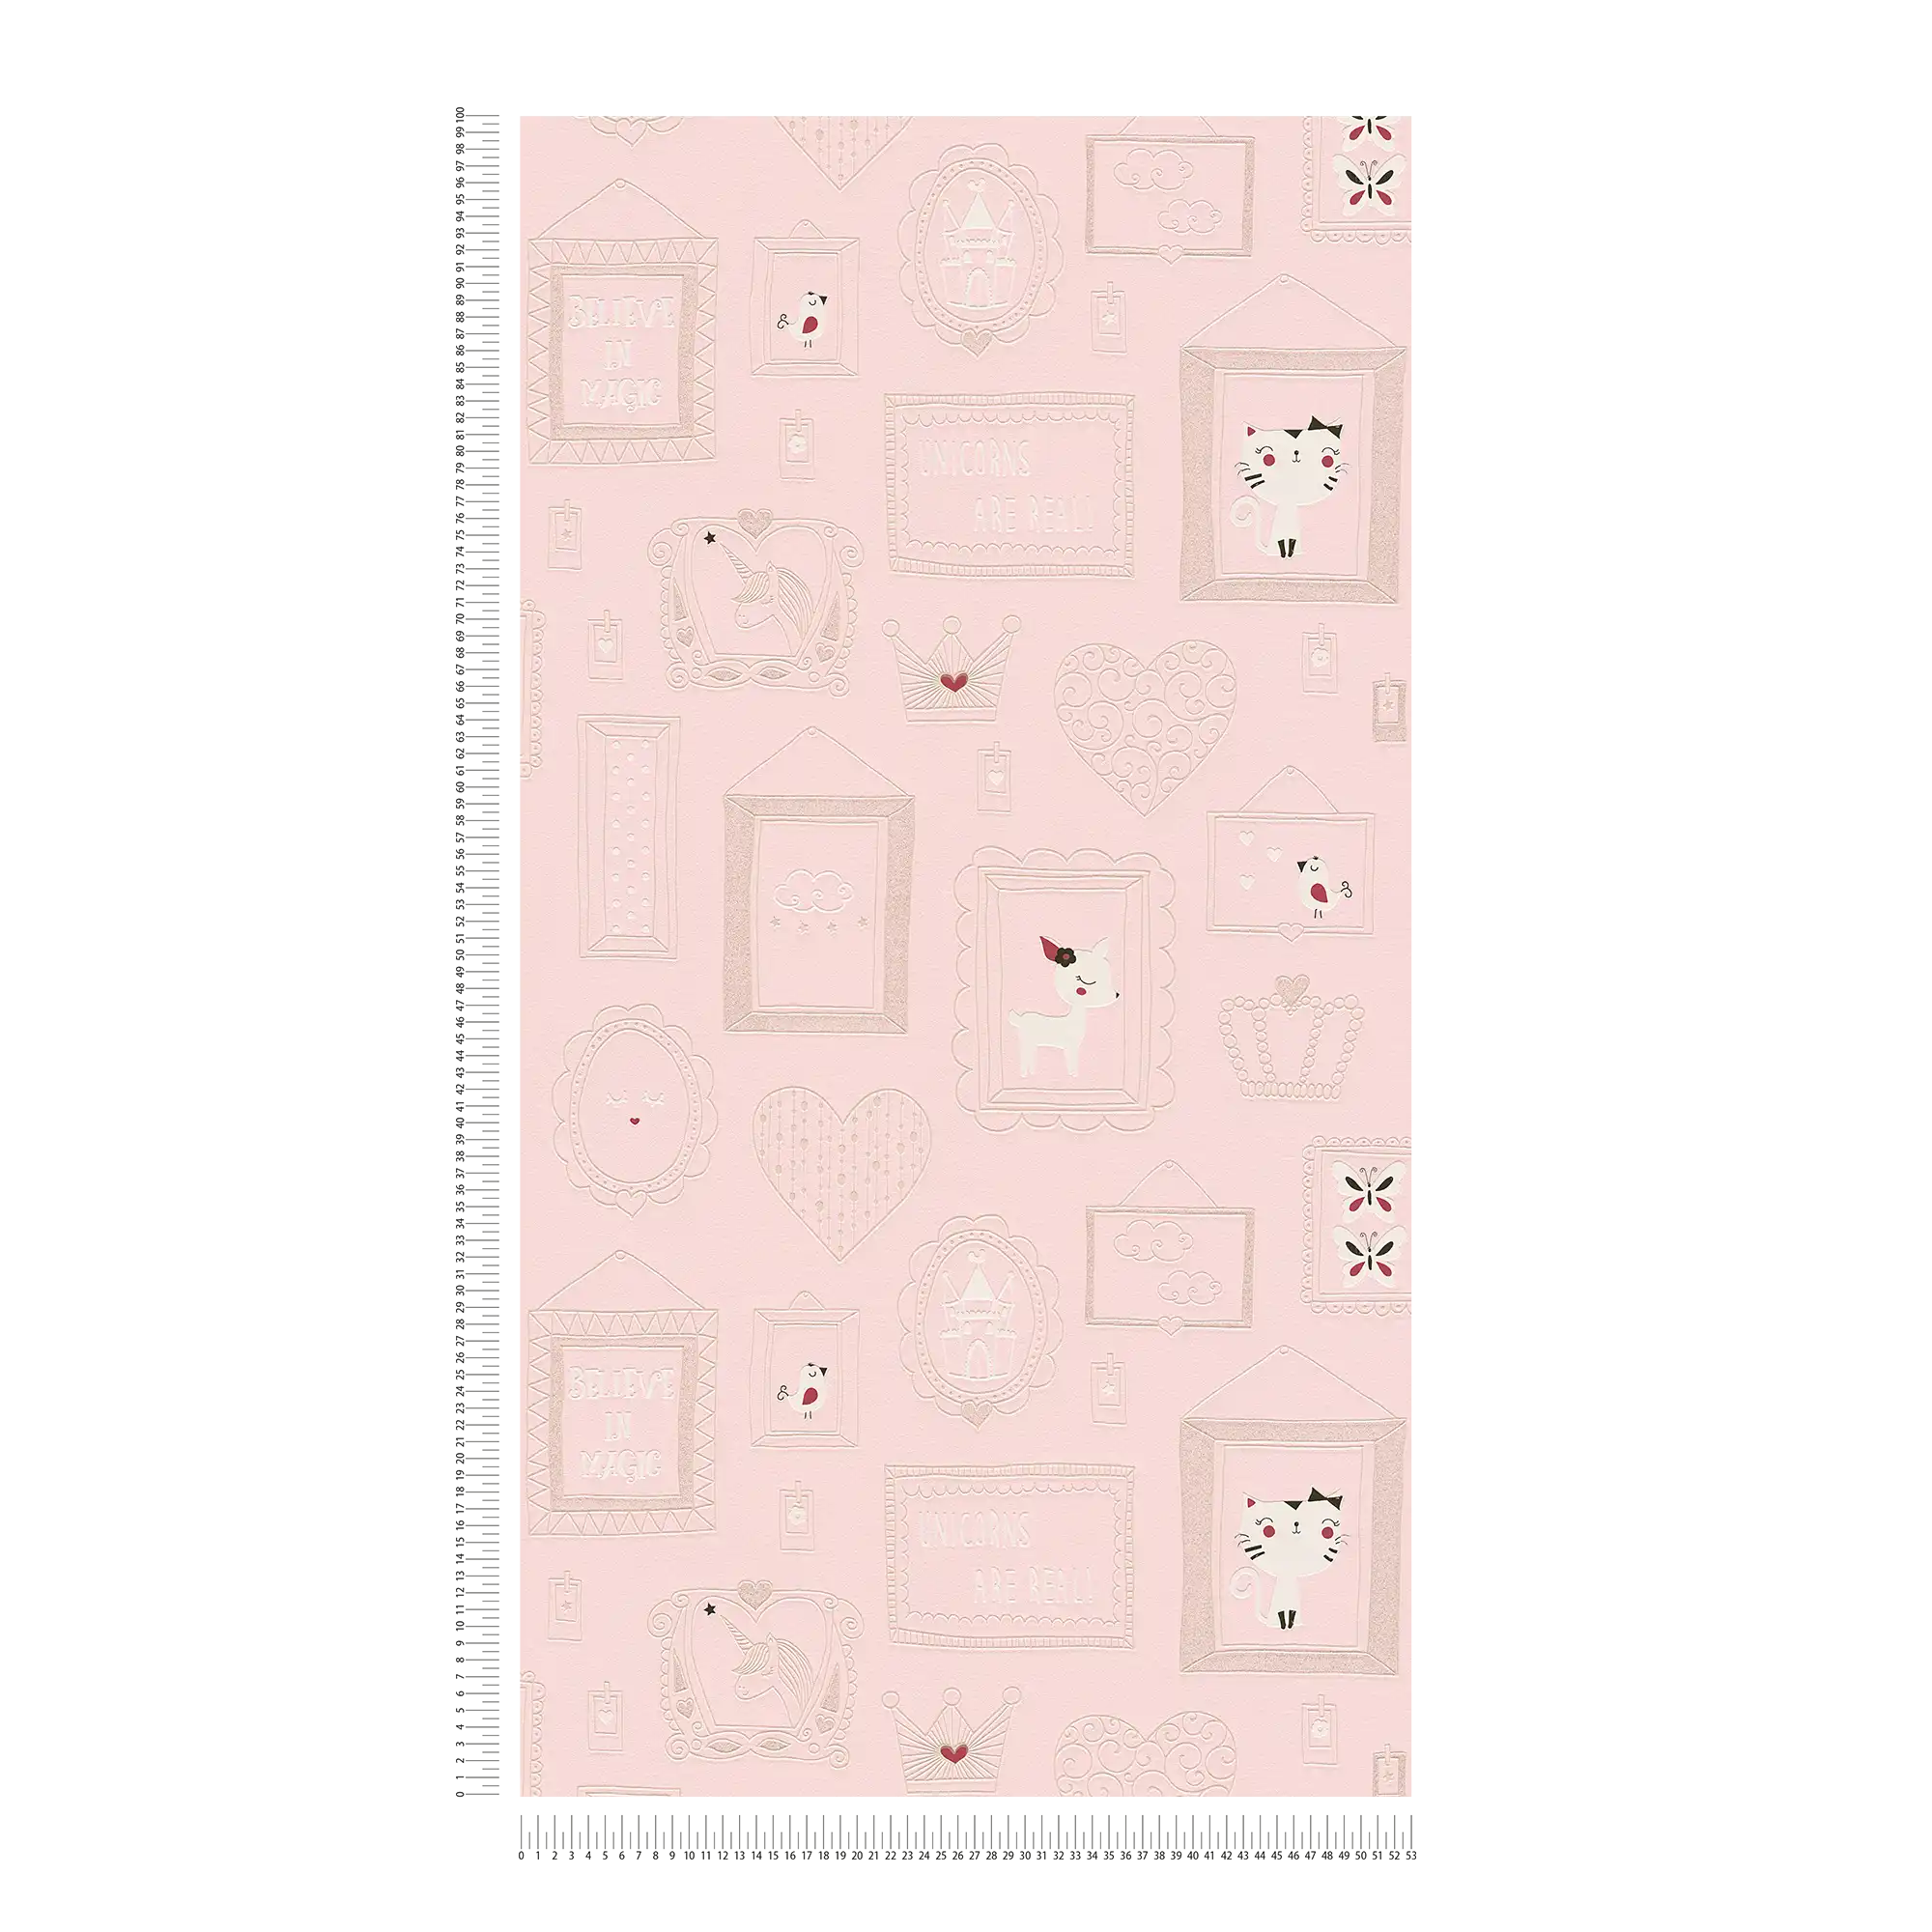             Behang meisjeskamer dierenmotieven met glitter - roze, wit
        